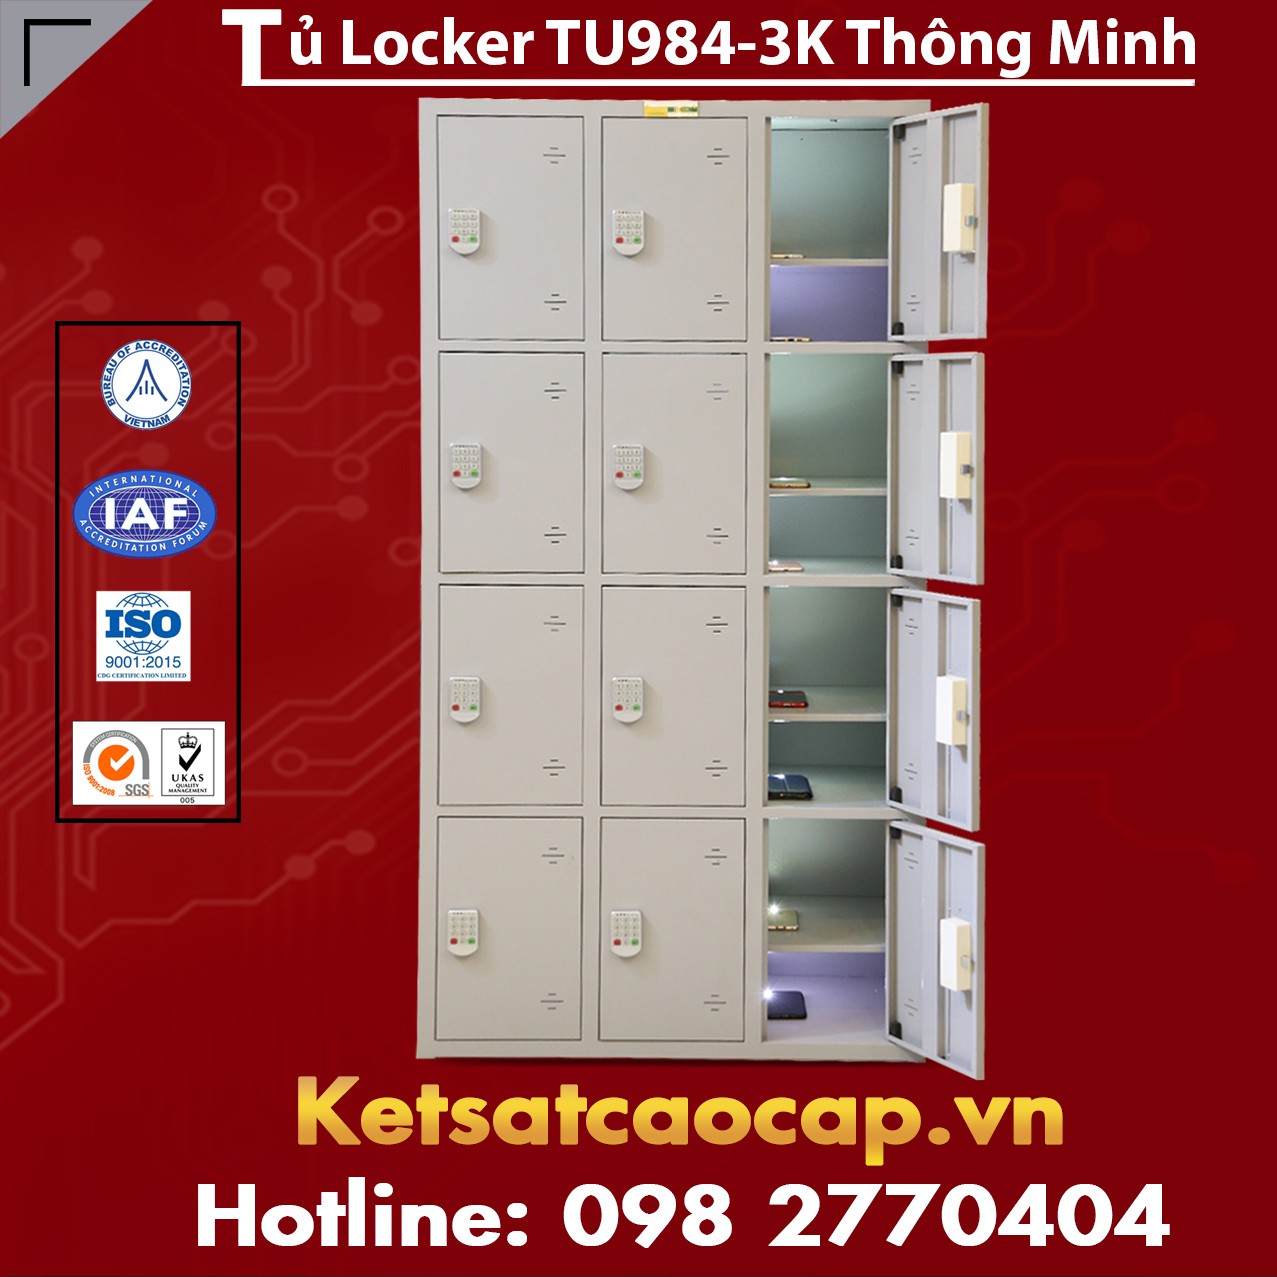  Tủ Sắt Locker 12 ngăn kiểu TU984-3K